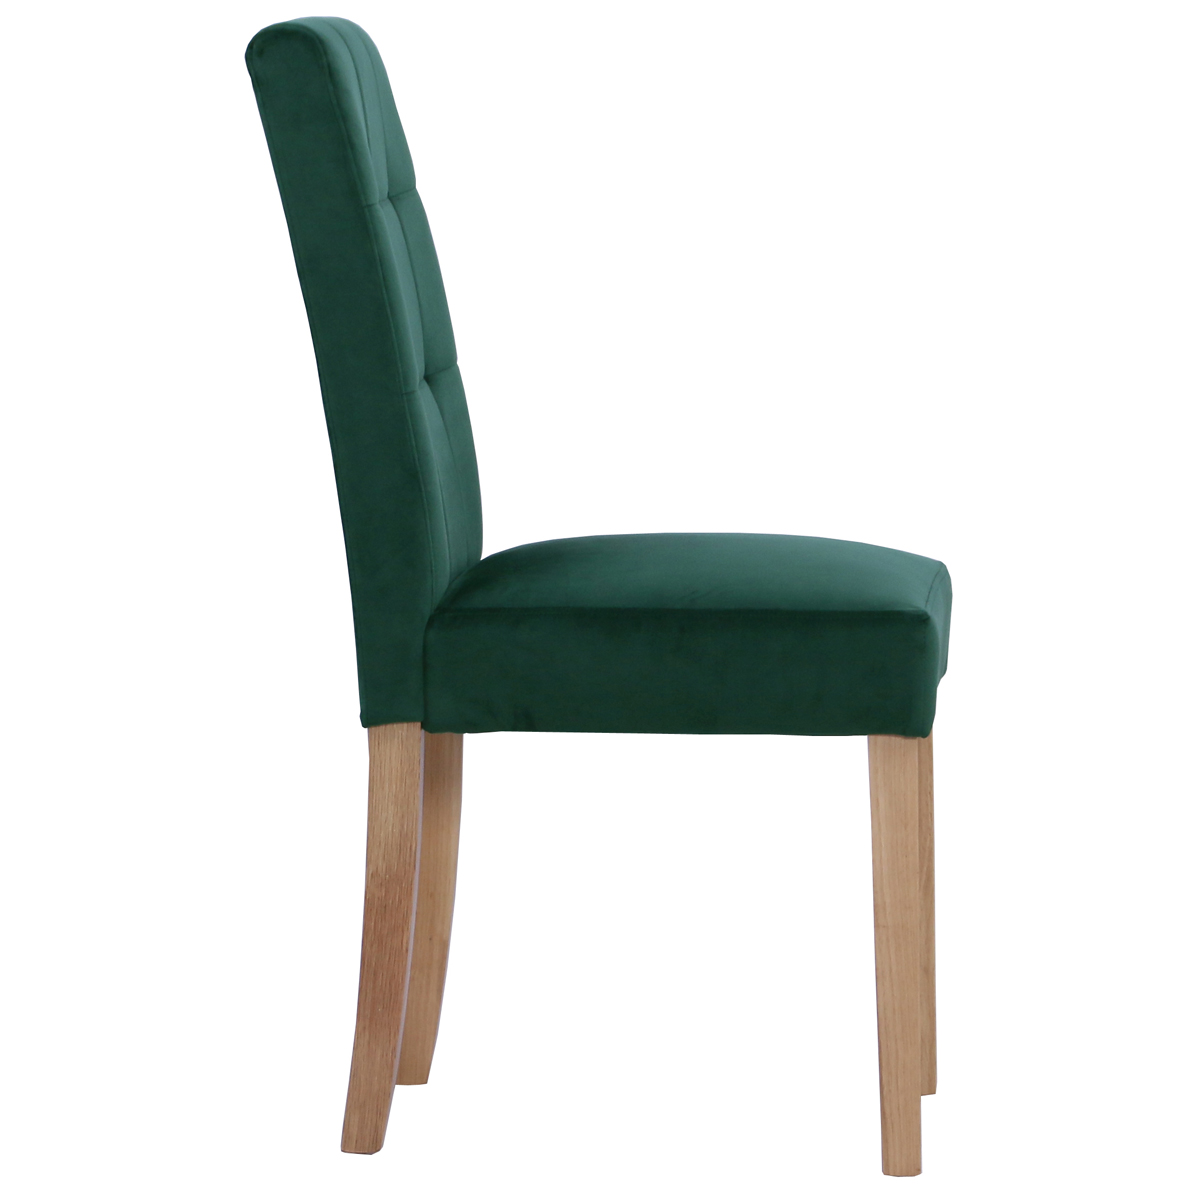 New Oak Ash 104 Chair